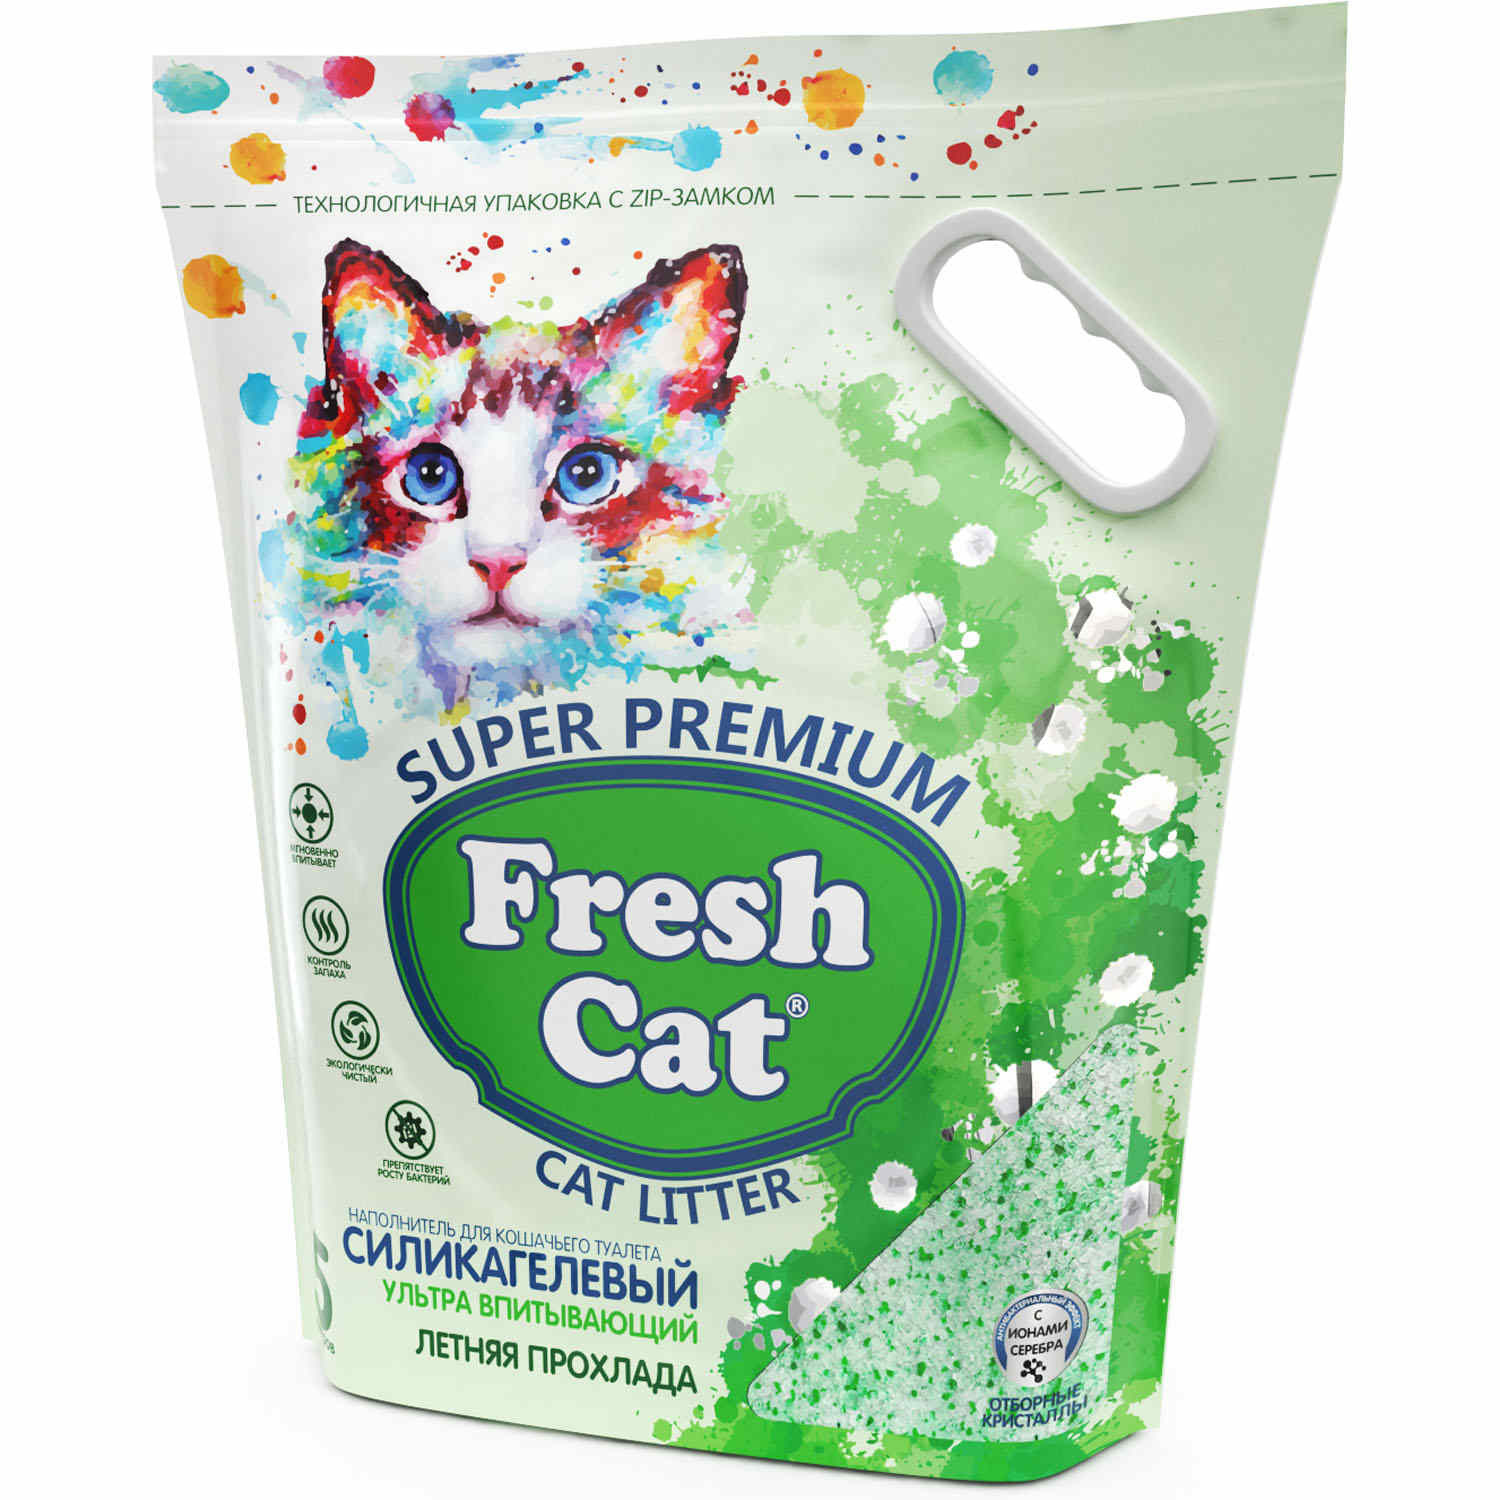 Fresh cat Fresh cat впитывающий силикагелевый наполнитель с ароматом Летняя прохлада, 5л (2 кг)